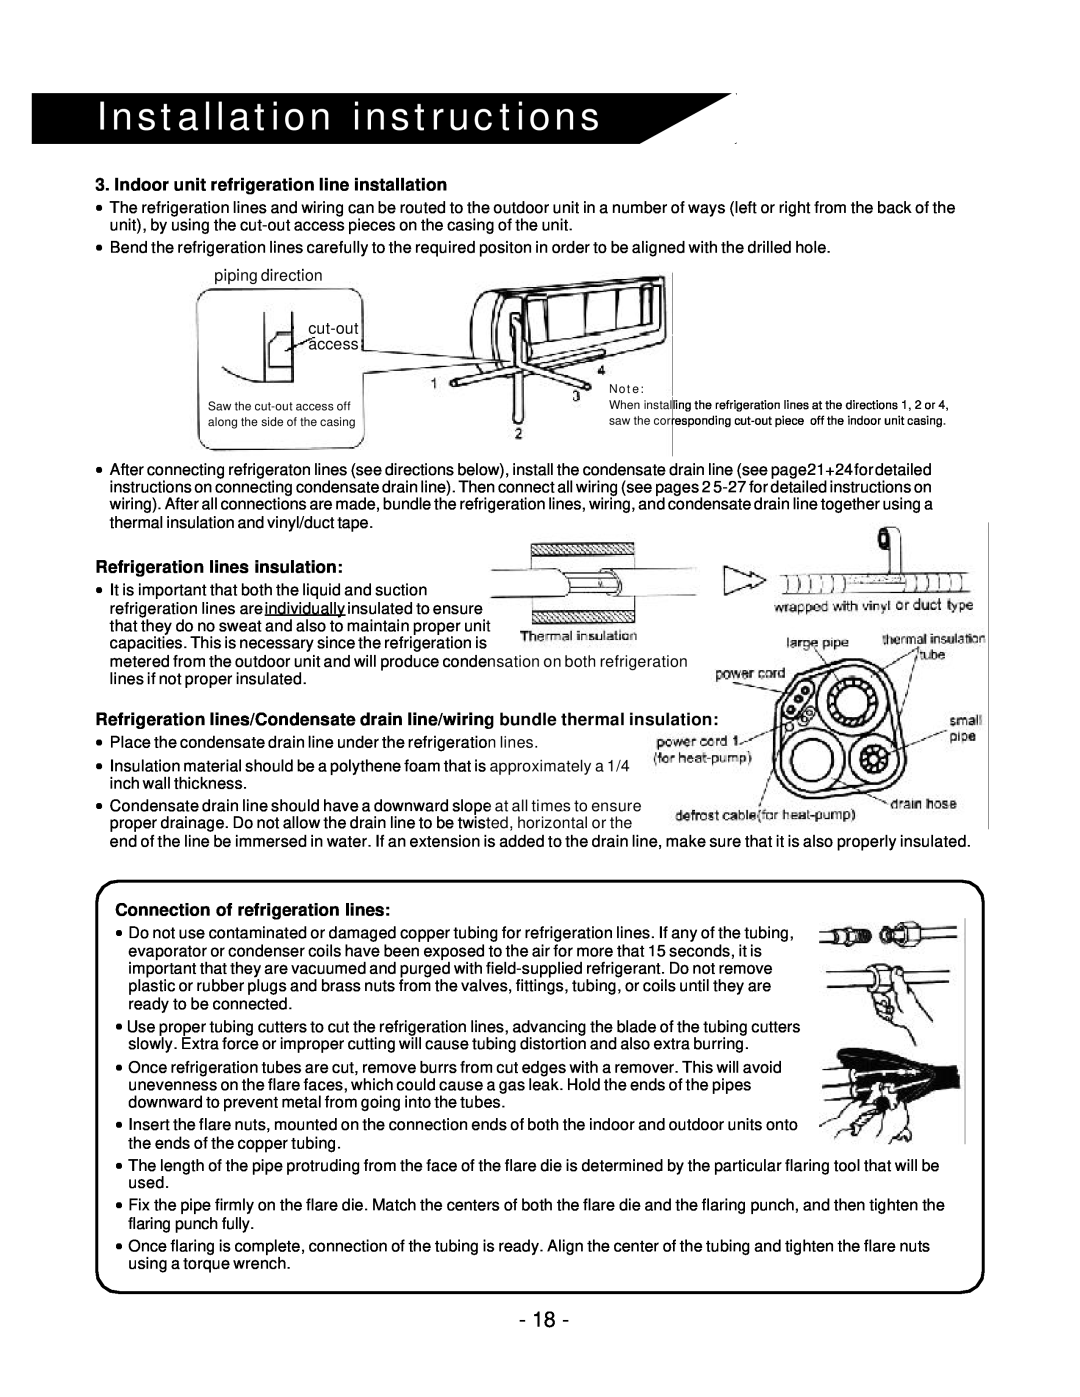 Soleus Air KFR/KFS Series manual Installation instructions, Indoor unit refrigeration line installation 